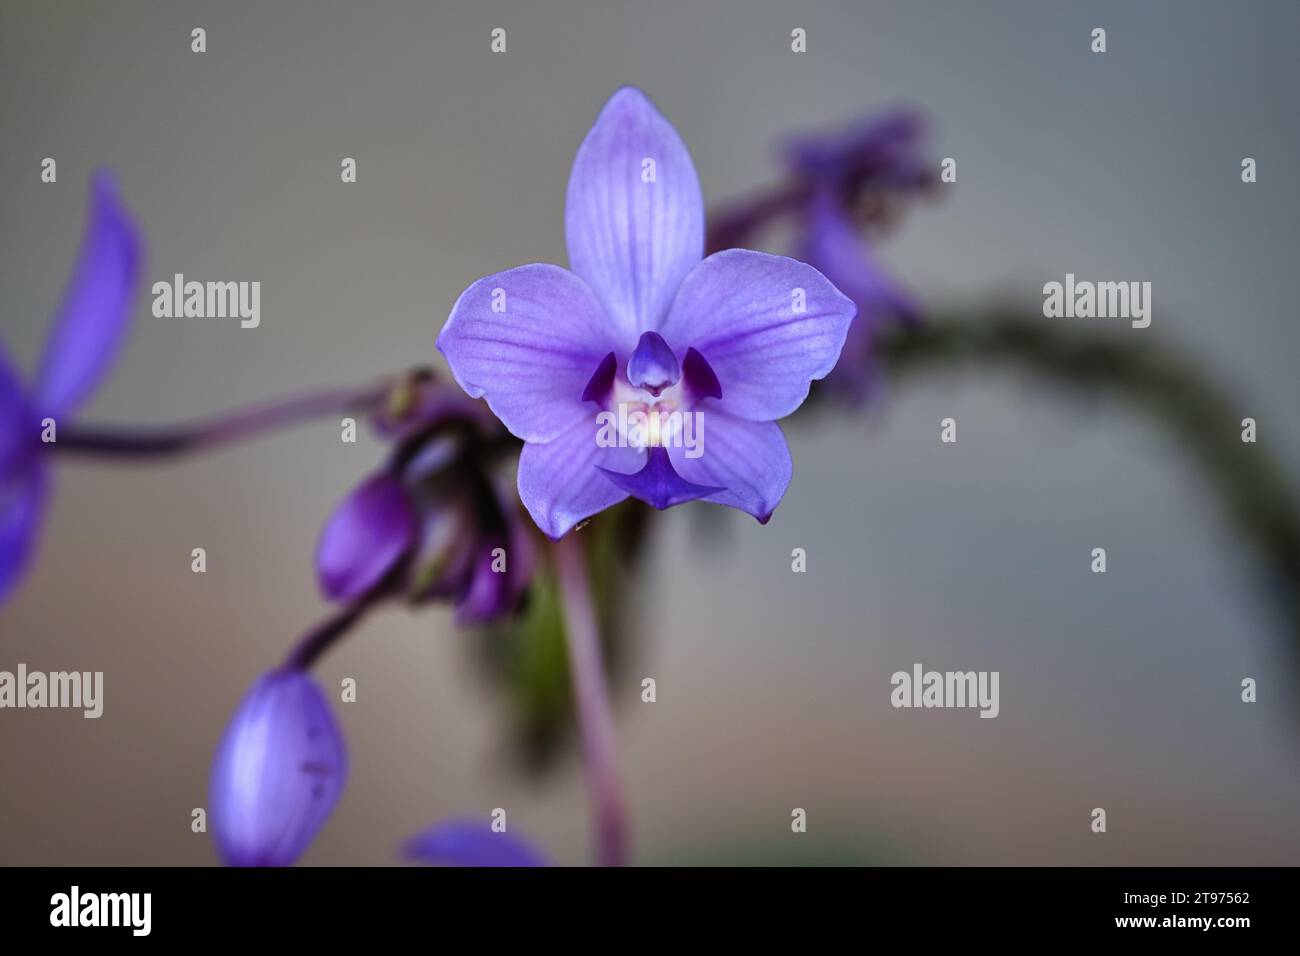 Spathoglottis plicata, auch bekannt als die philippinische Ground Orchidee oder große violette Orchidee, ist eine immergrüne Orchidee Stockfoto